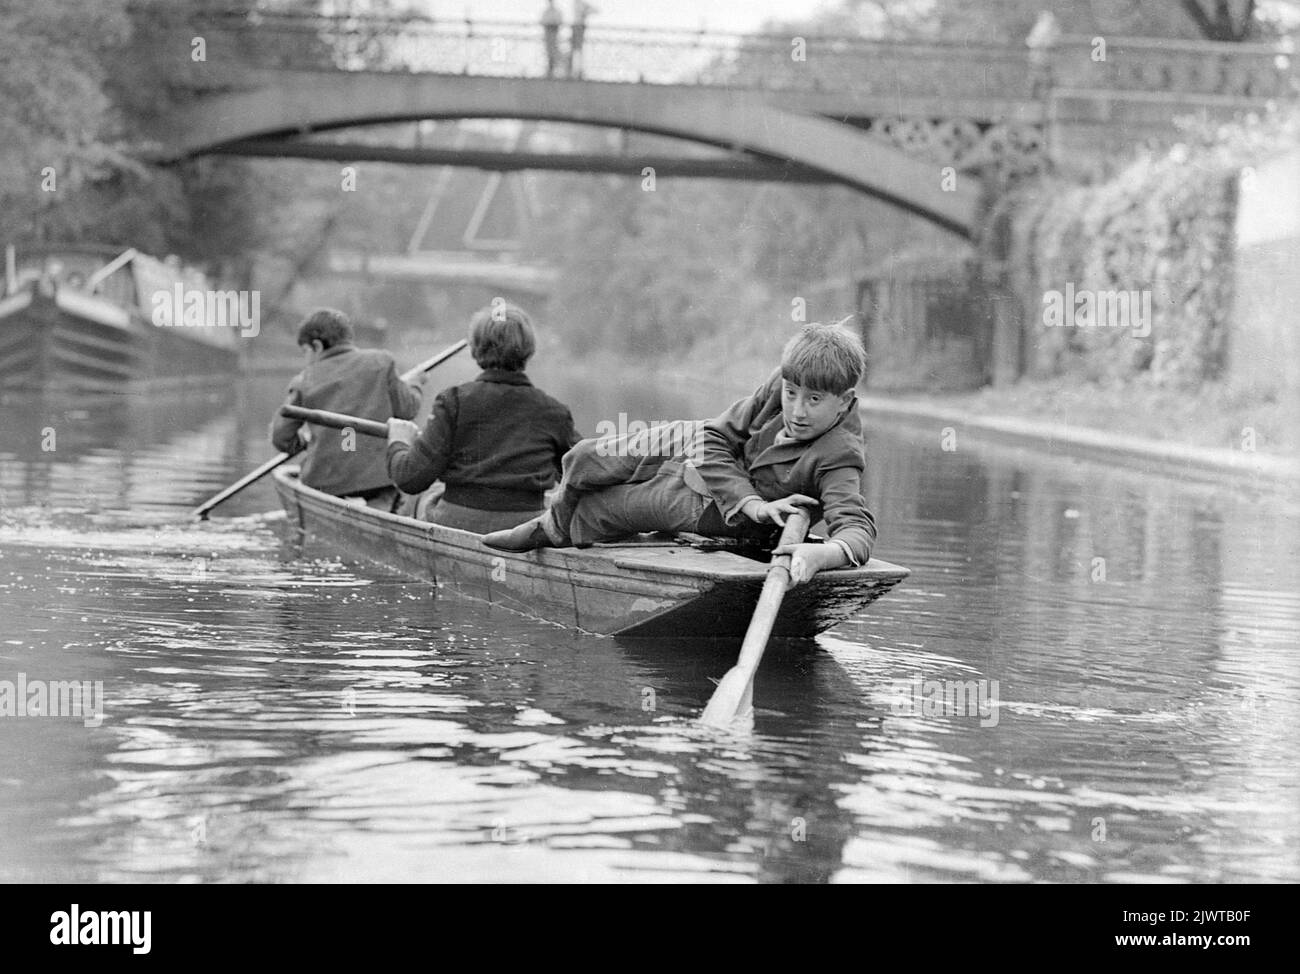 Londres, Angleterre, vers 1967. Trois garçons du Piratess’ Club pagayent un bateau le long du canal Regent’ près du bassin Cumberland. Au loin, vous apercevez une passerelle et le Snowdon Aviary du zoo de Londres dans Regent's Park. Le Piratess’ Club, un club de canotage pour enfants, a été créé en 1966 à Gilbey’s Wharf, sur le canal Regent's, près de Camden, à Londres. Leur pavillon était une ancienne barge et un certain nombre de petits bateaux et de canoës avaient été donnés pour les enfants. Banque D'Images